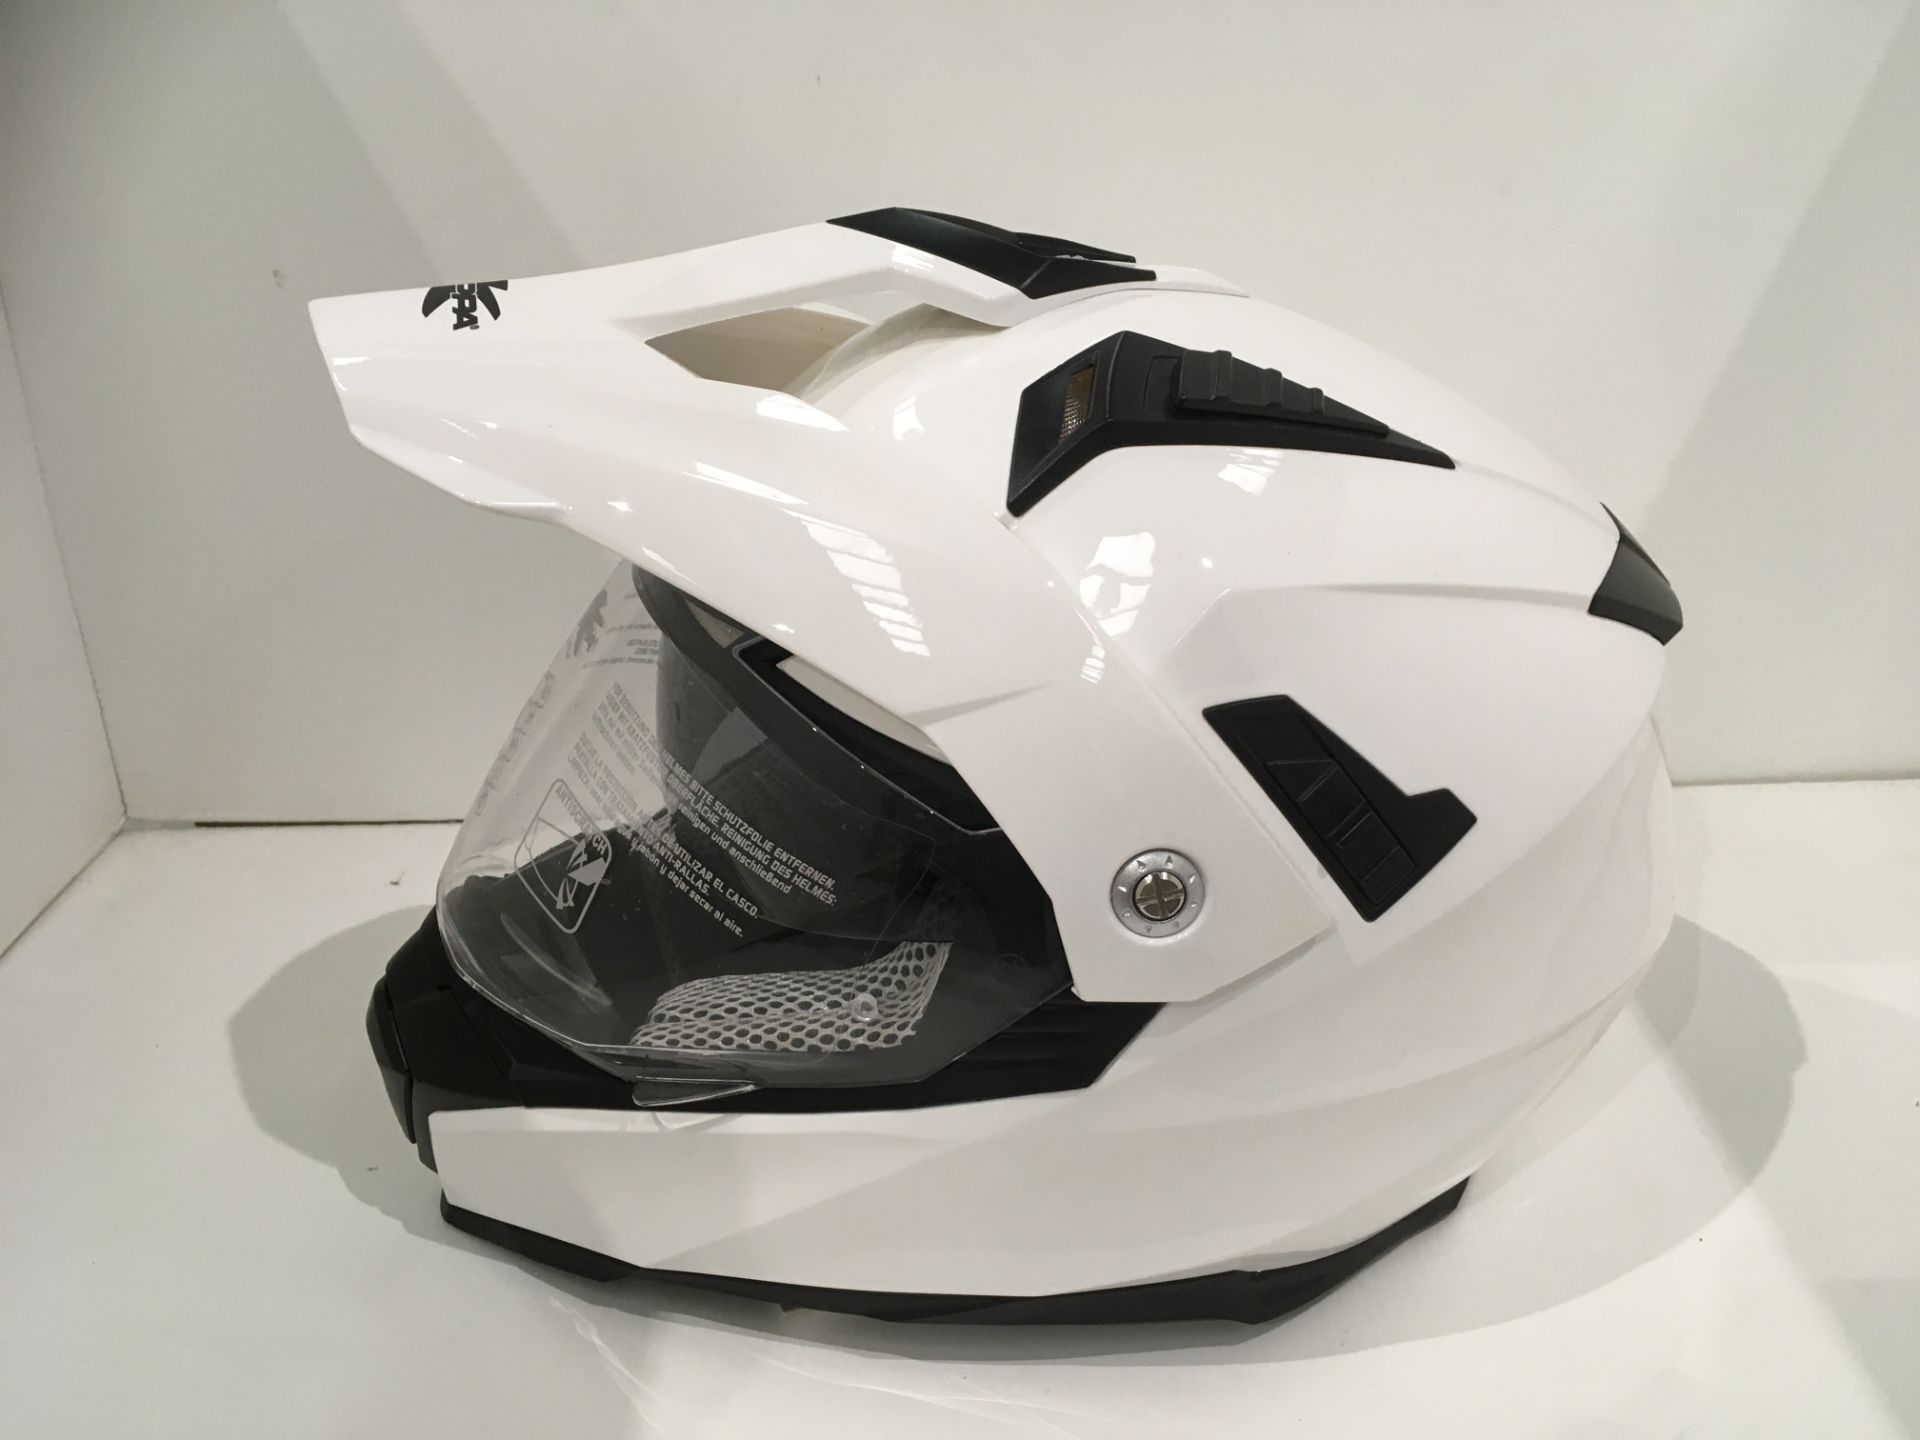 Kappa KV-30 Enduro helmet in gloss white - size M (58cm) - Image 3 of 4